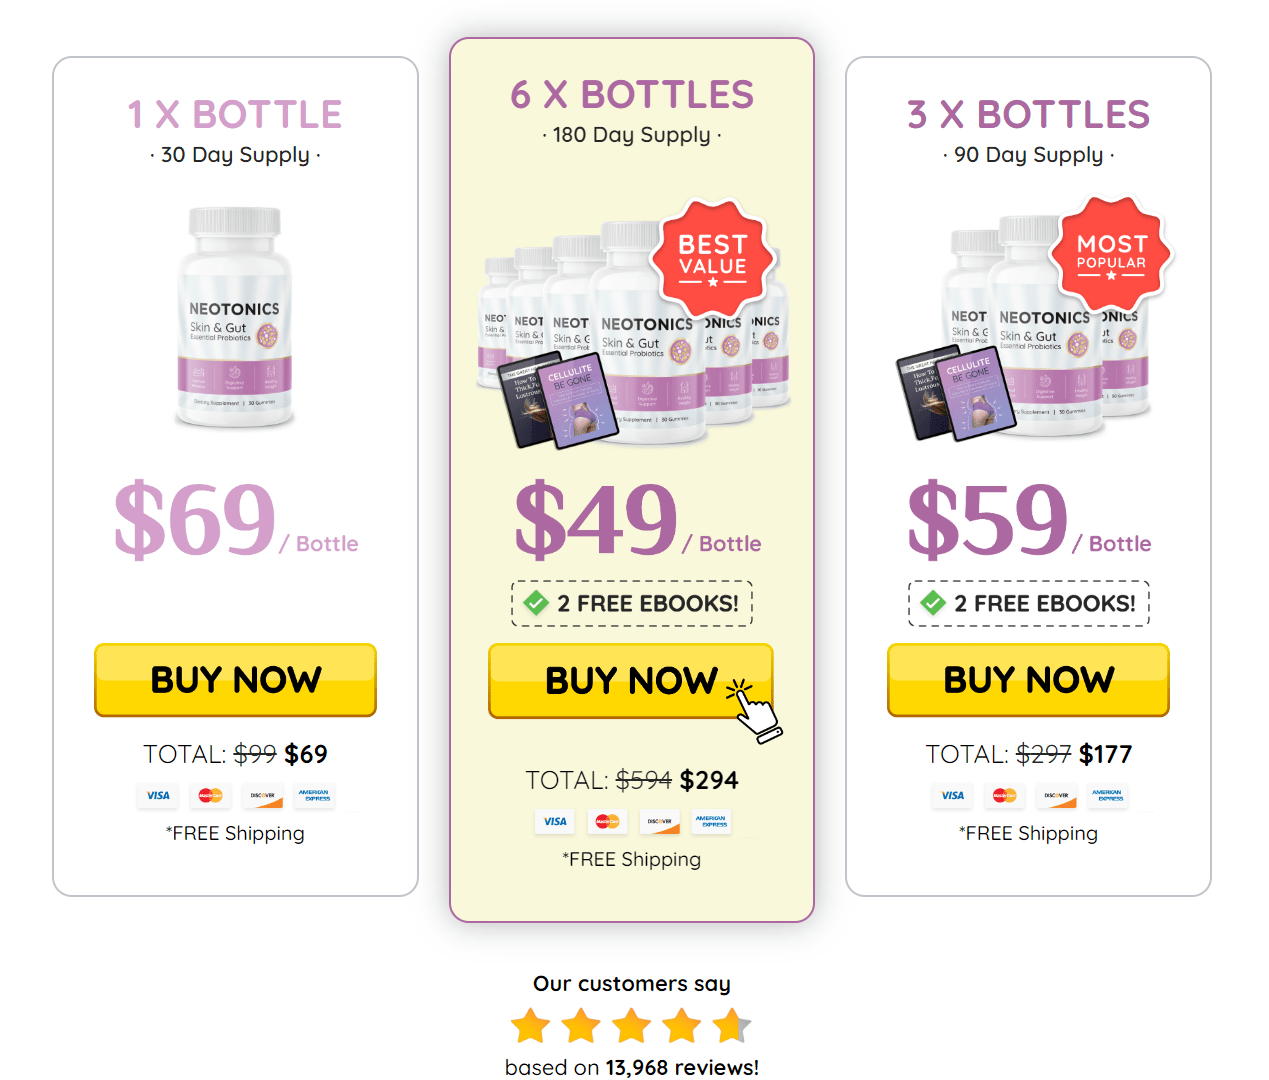 Neotonics bottle pricing